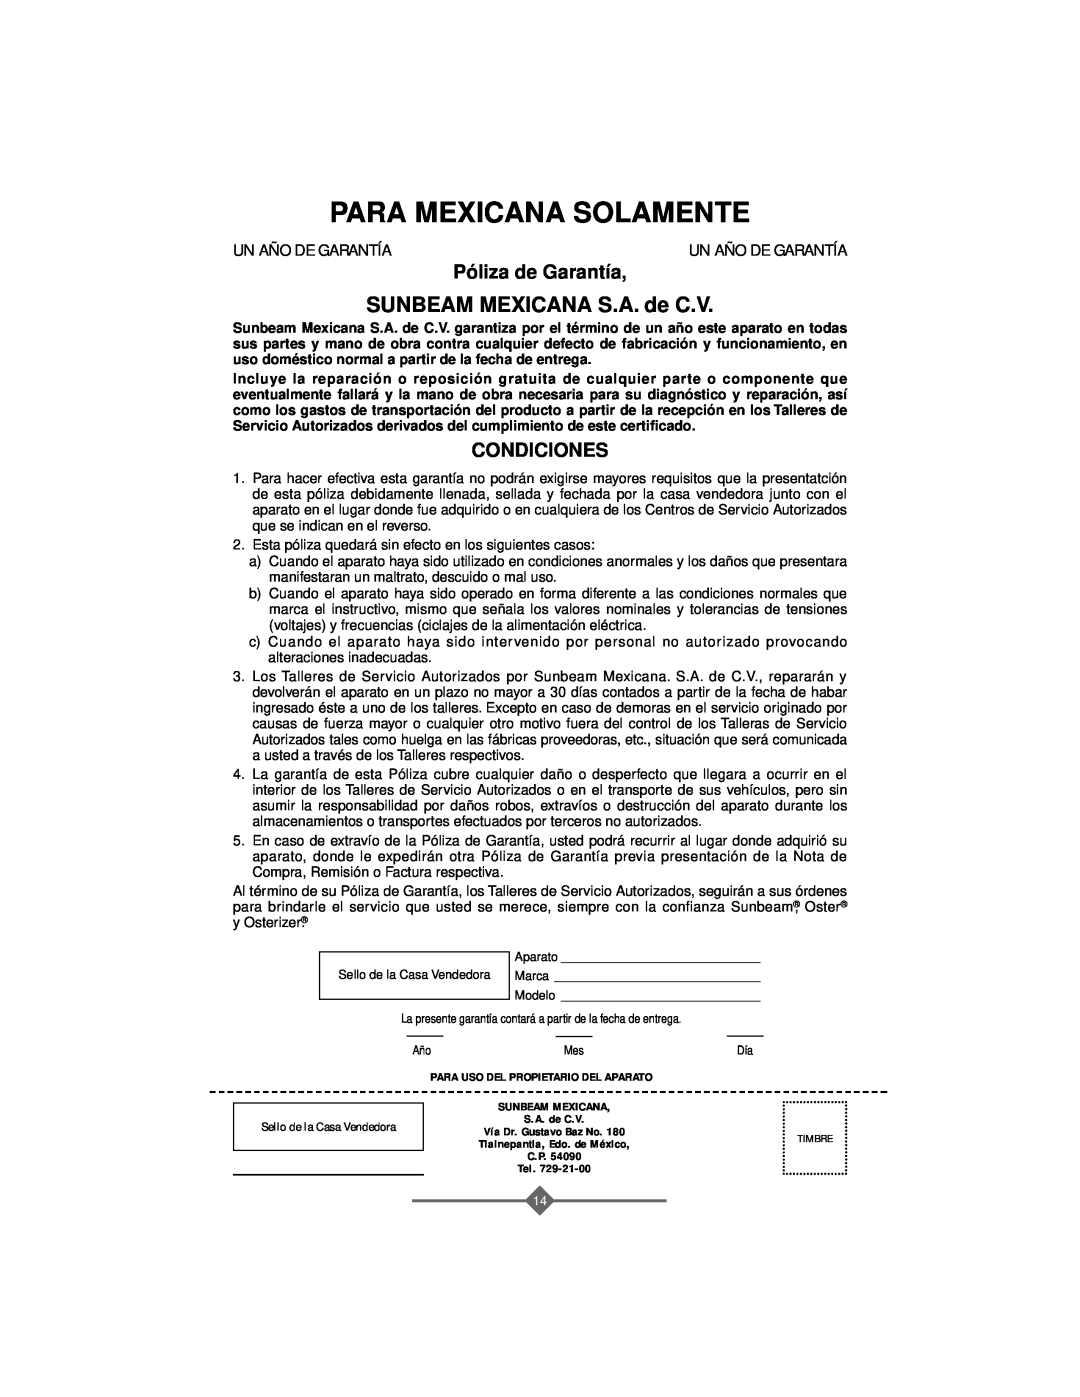 Sunbeam 3806 instruction manual SUNBEAM MEXICANA S.A. de C.V, Para Mexicana Solamente, Póliza de Garantía, Condiciones 